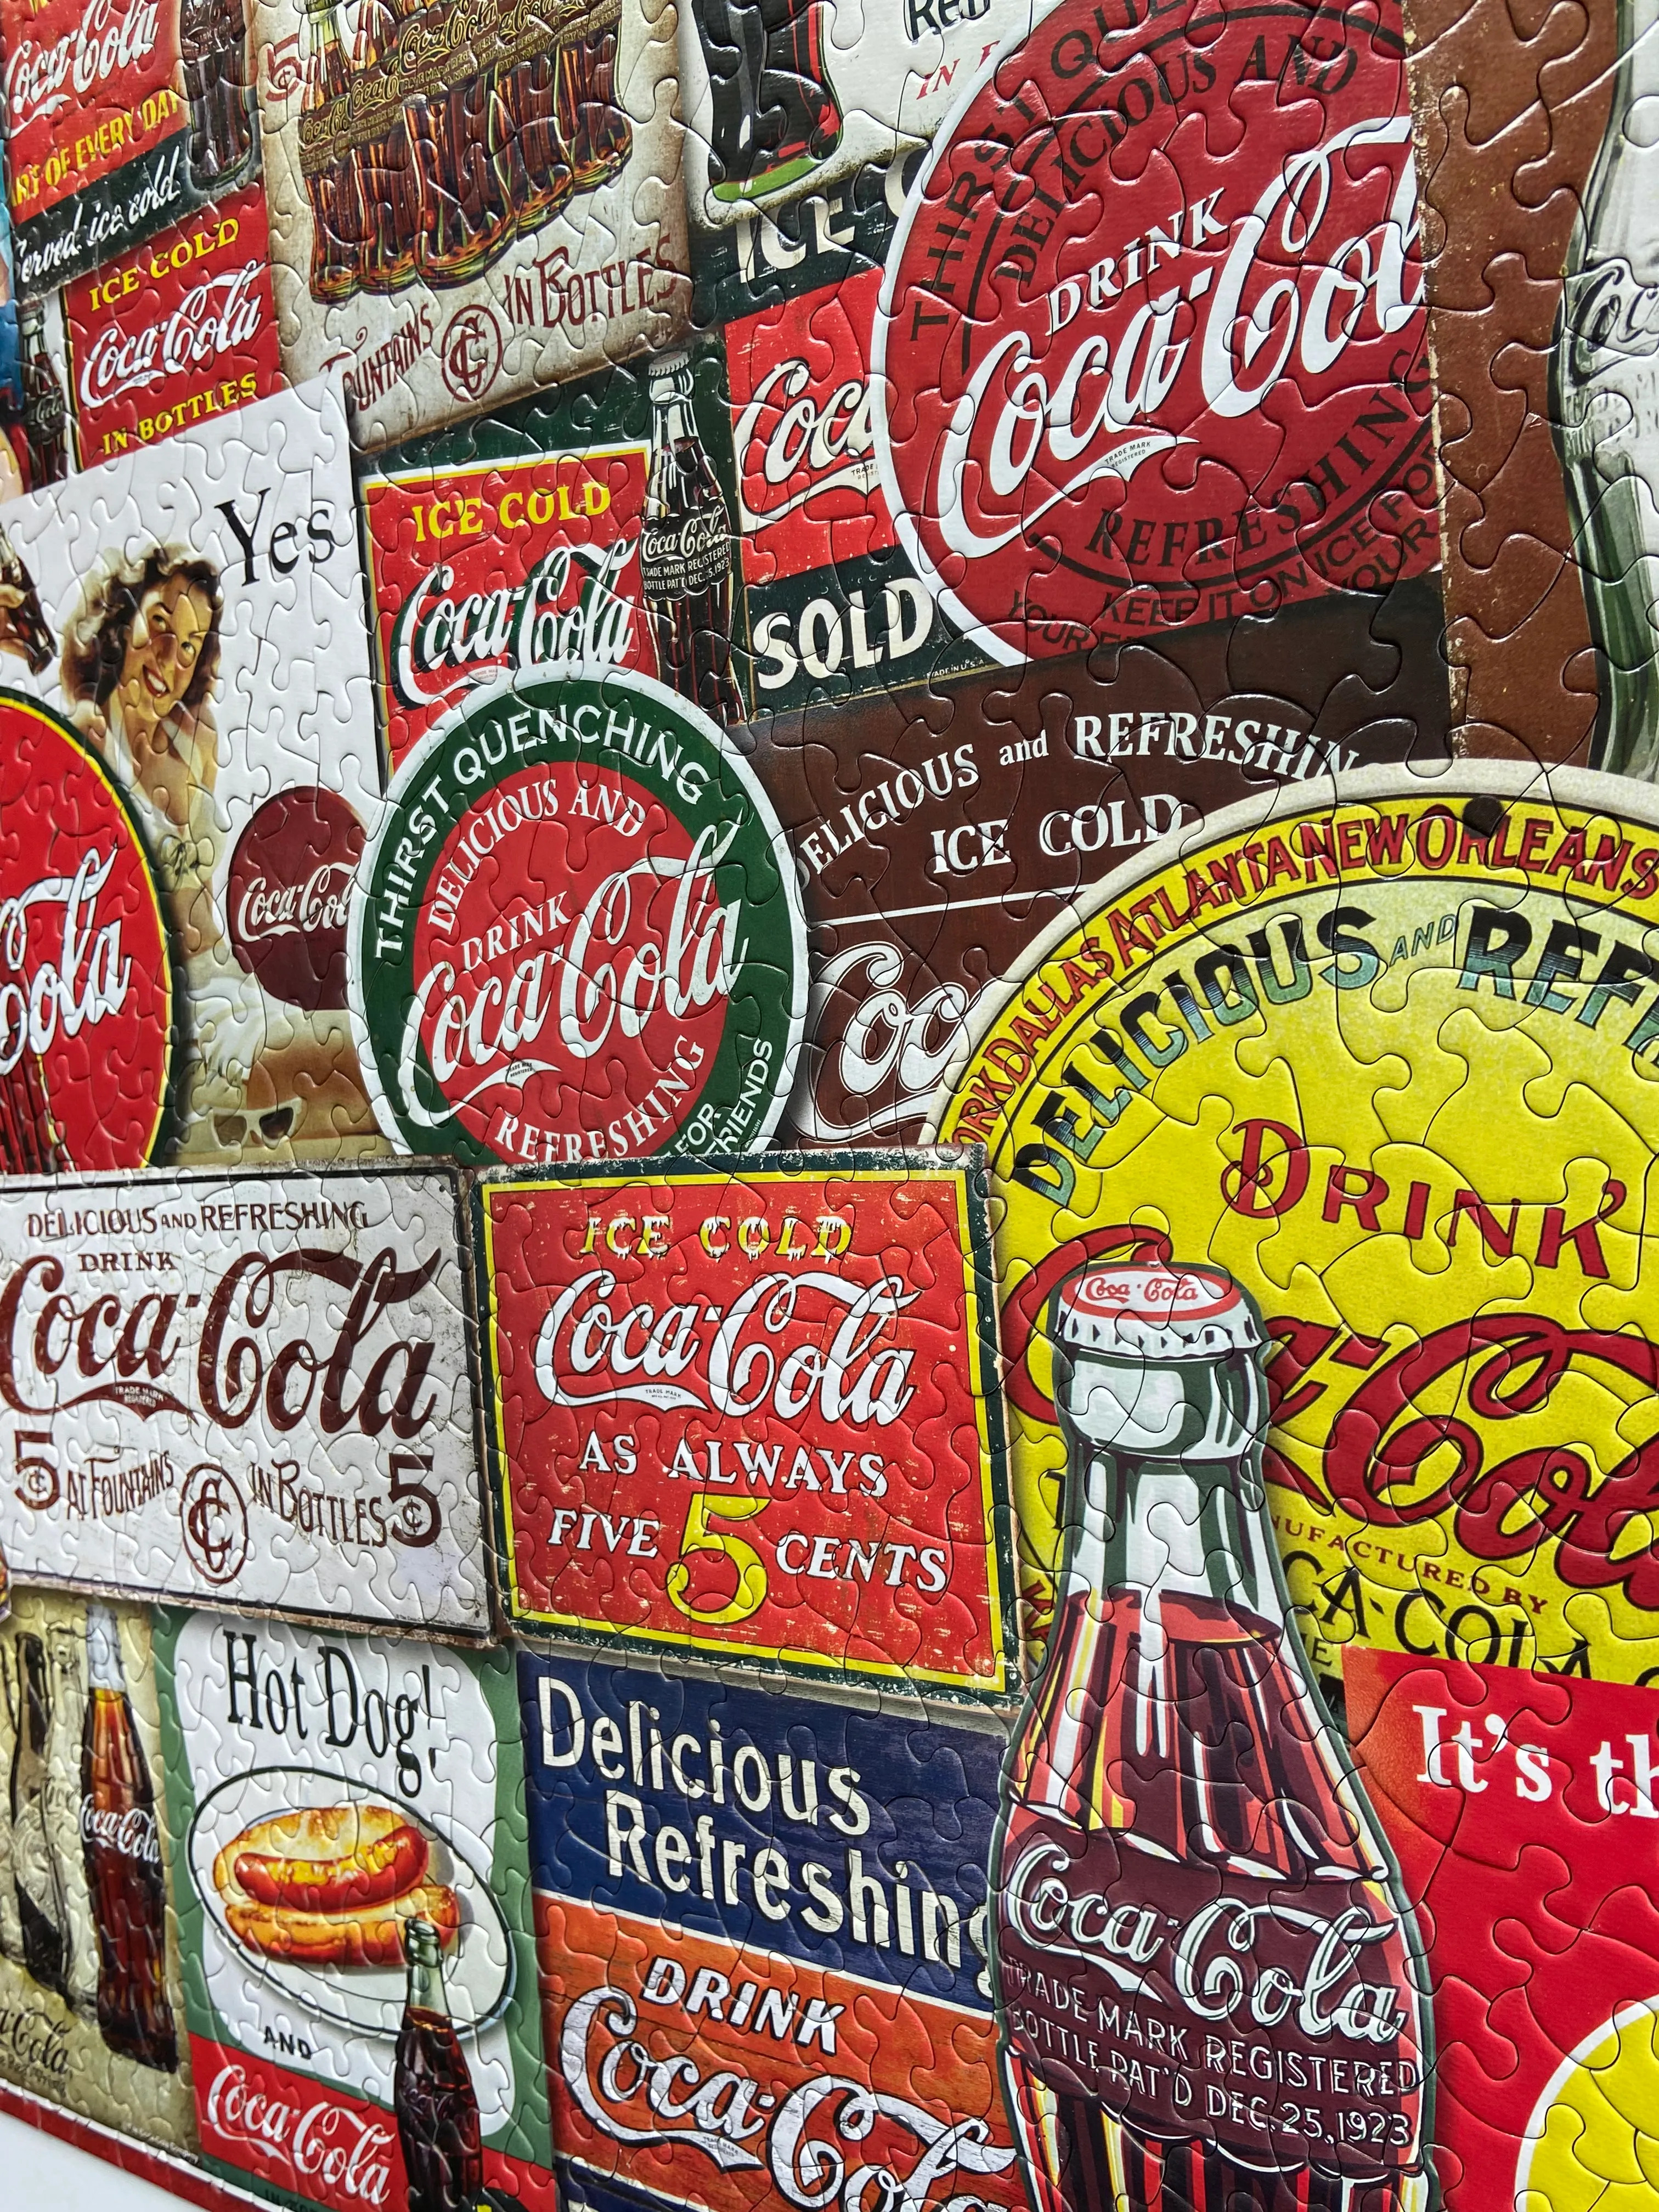 Coca-Cola Decades of Tradition 1000 Piece Jigsaw Puzzle